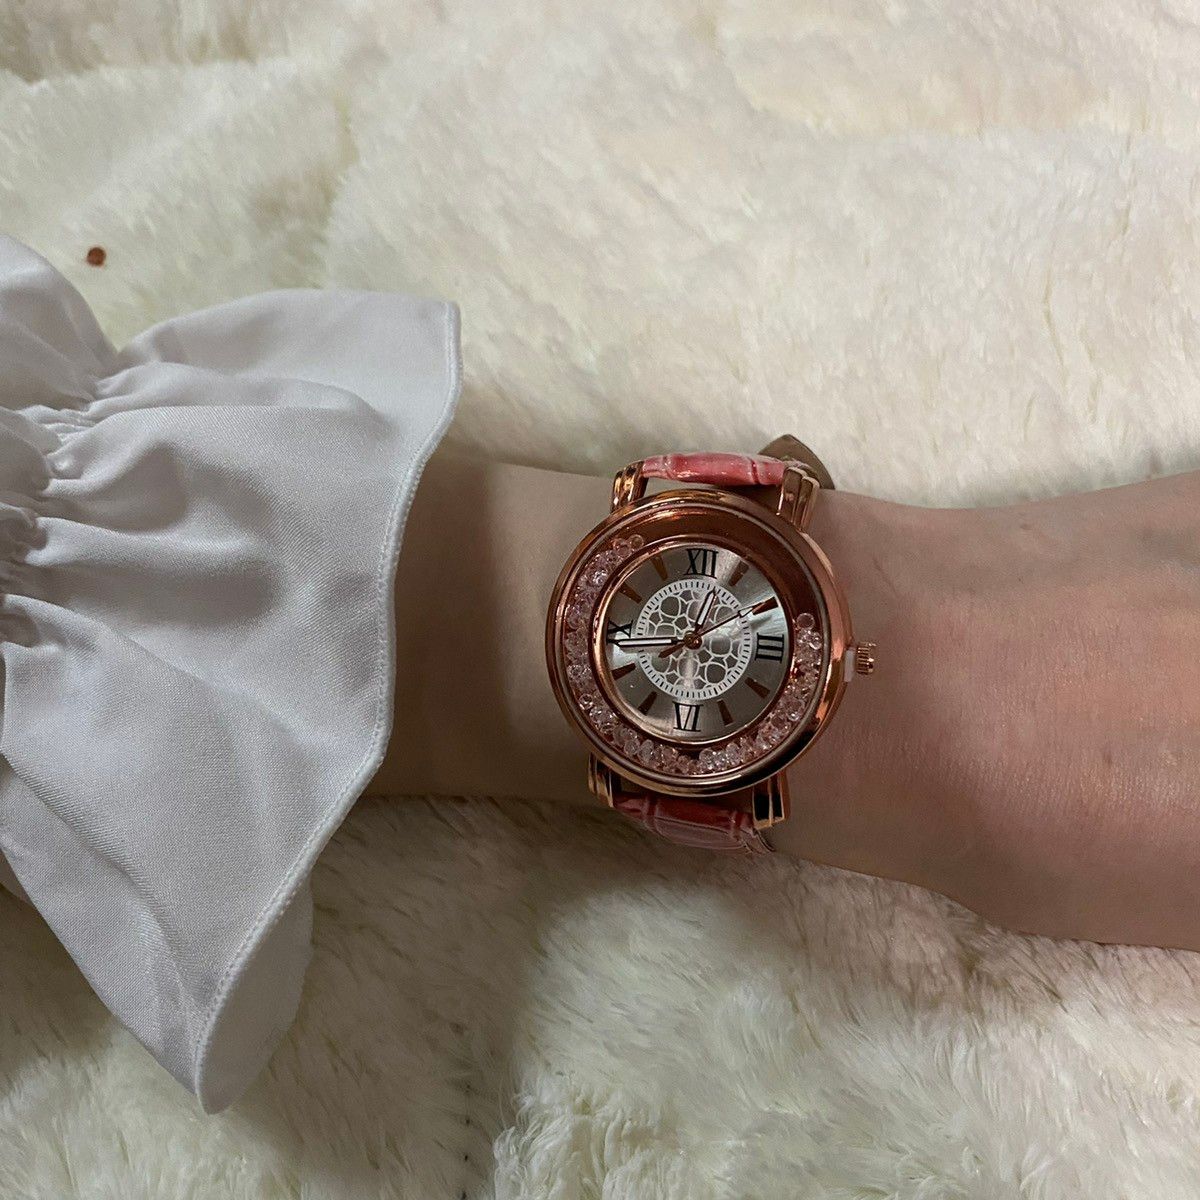 733【人気商品】レディース 腕時計 クォーツ ピンク お洒落 アイテム